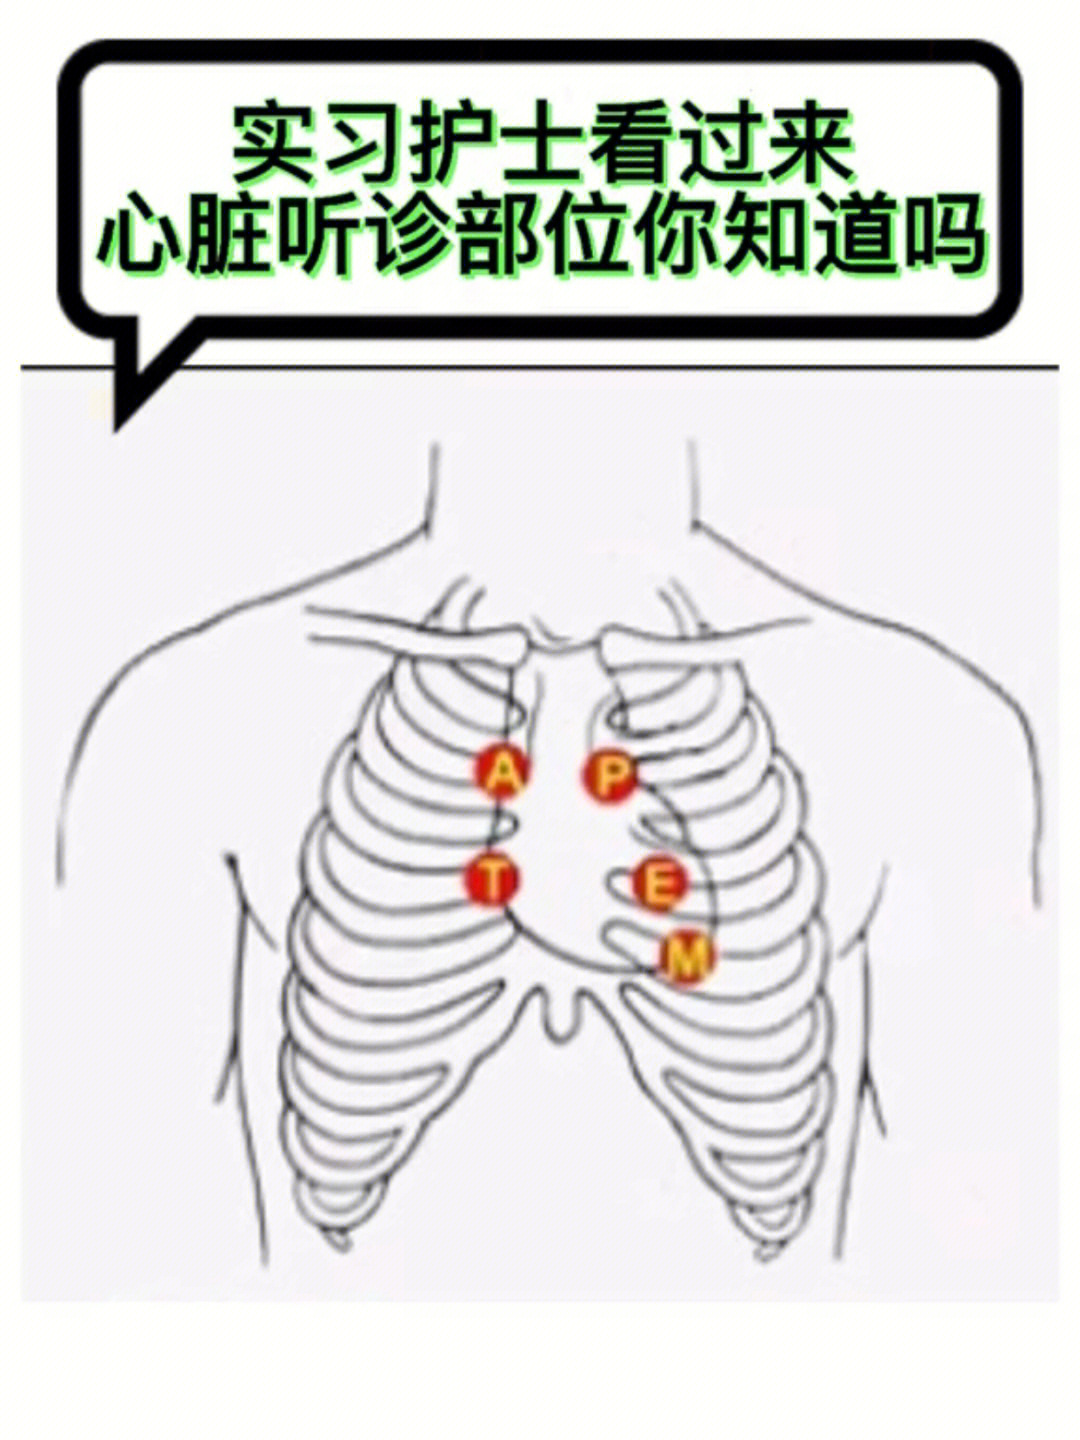 肺部听诊顺序示意图图片